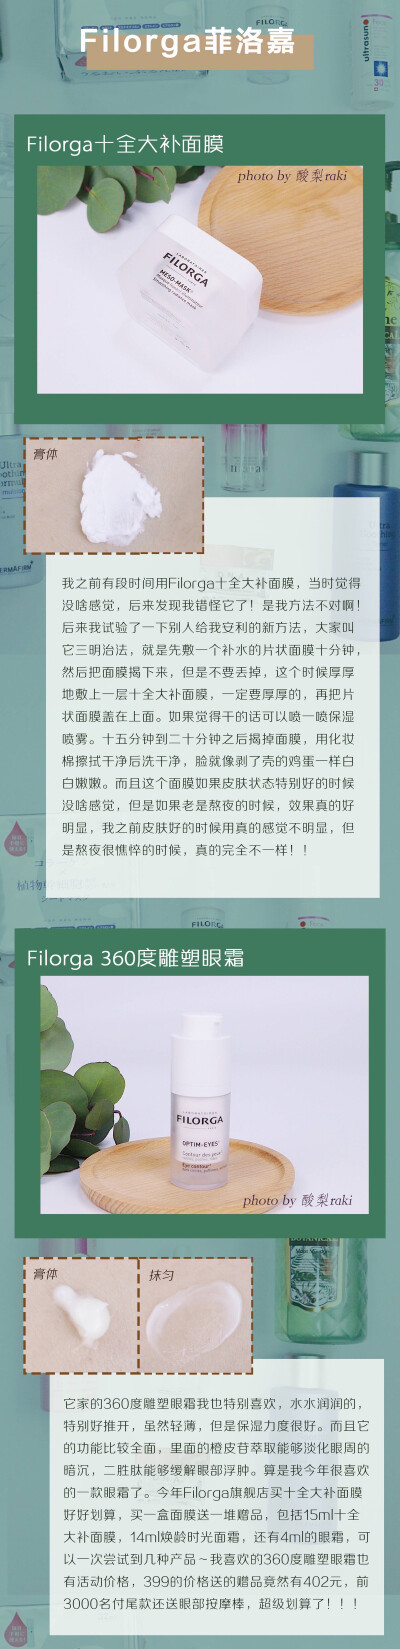 Filorga十全大补面膜+眼霜